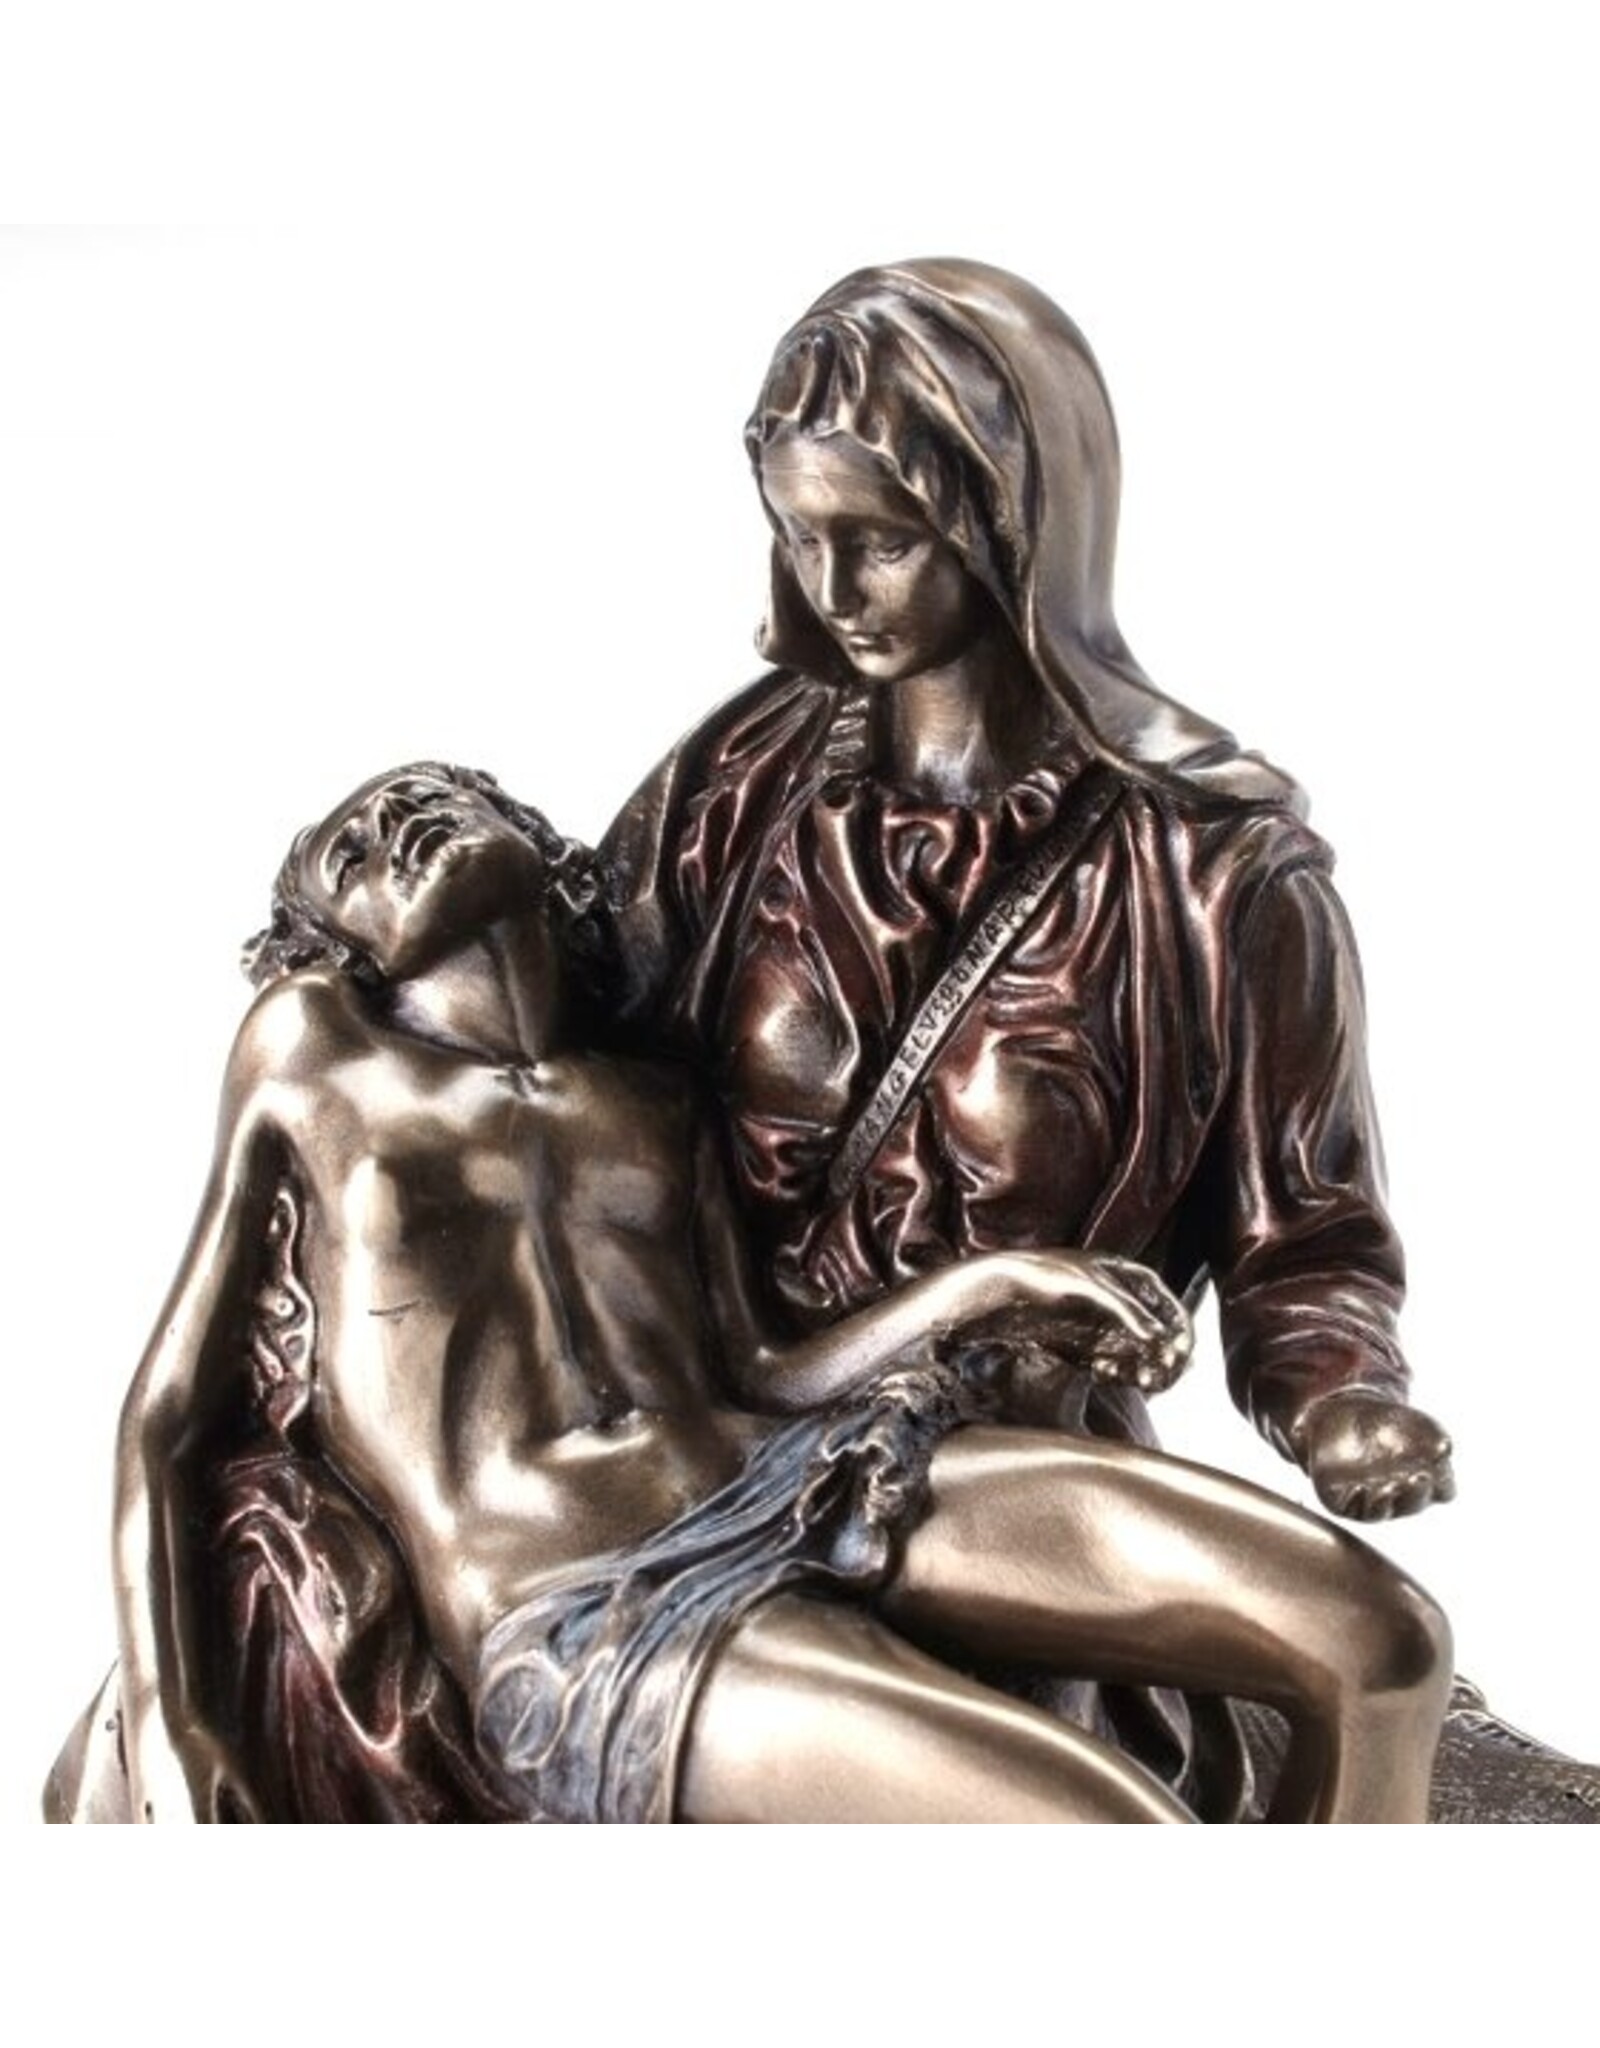 Veronese Design Giftware & Lifestyle -  Pieta Michelangelo Christus gehaald van het kruis Veronese Design